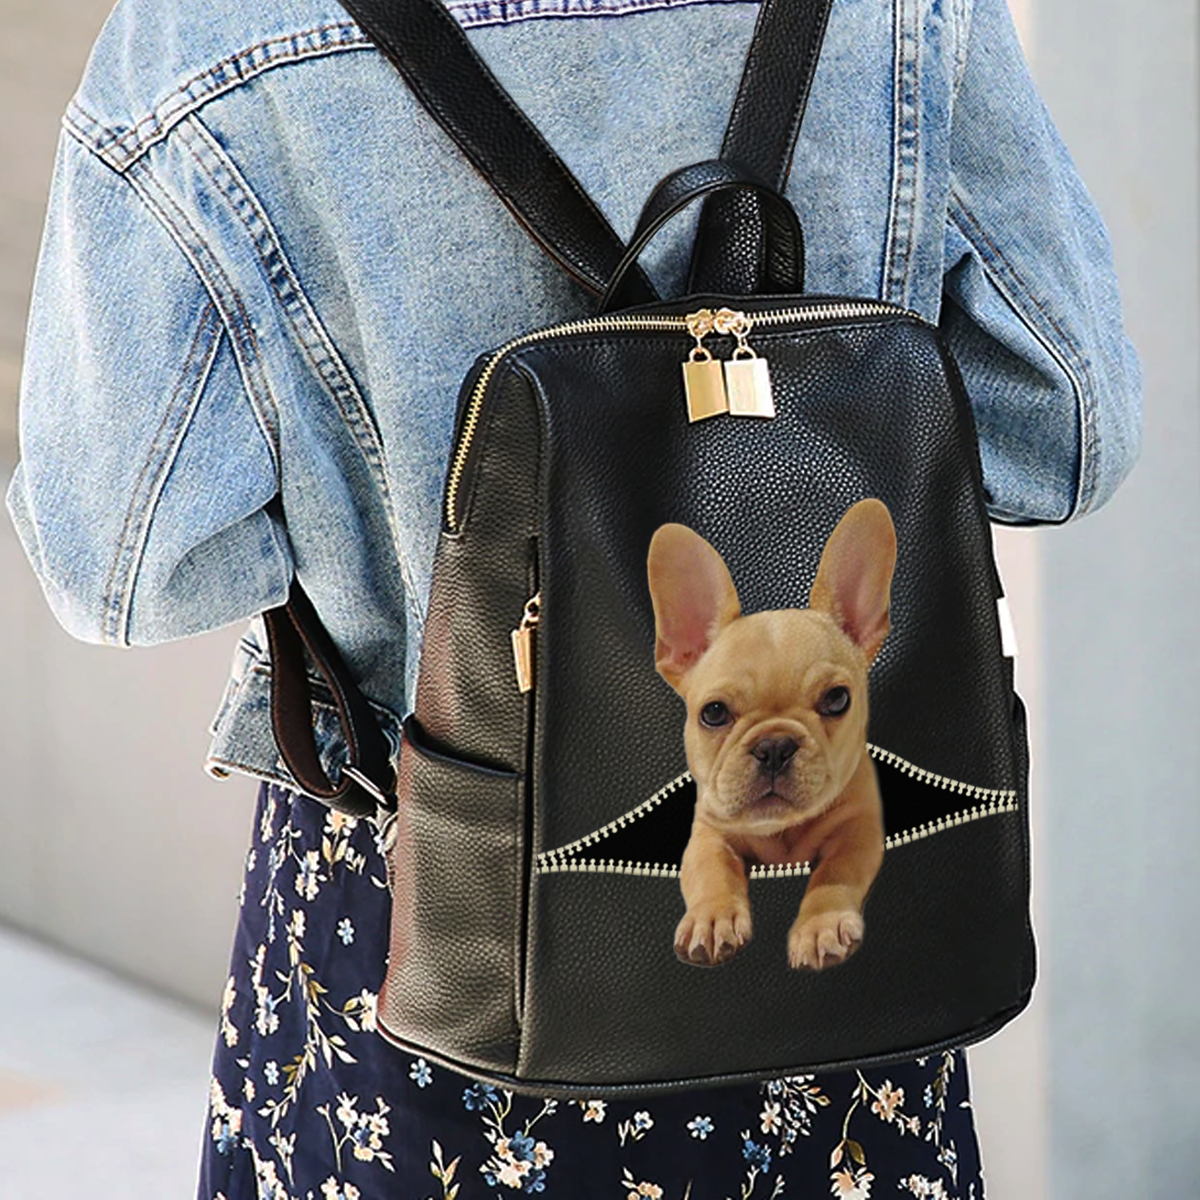 Gemeinsam ausgehen – Personalisierter Rucksack mit dem Foto Ihres Haustieres V1